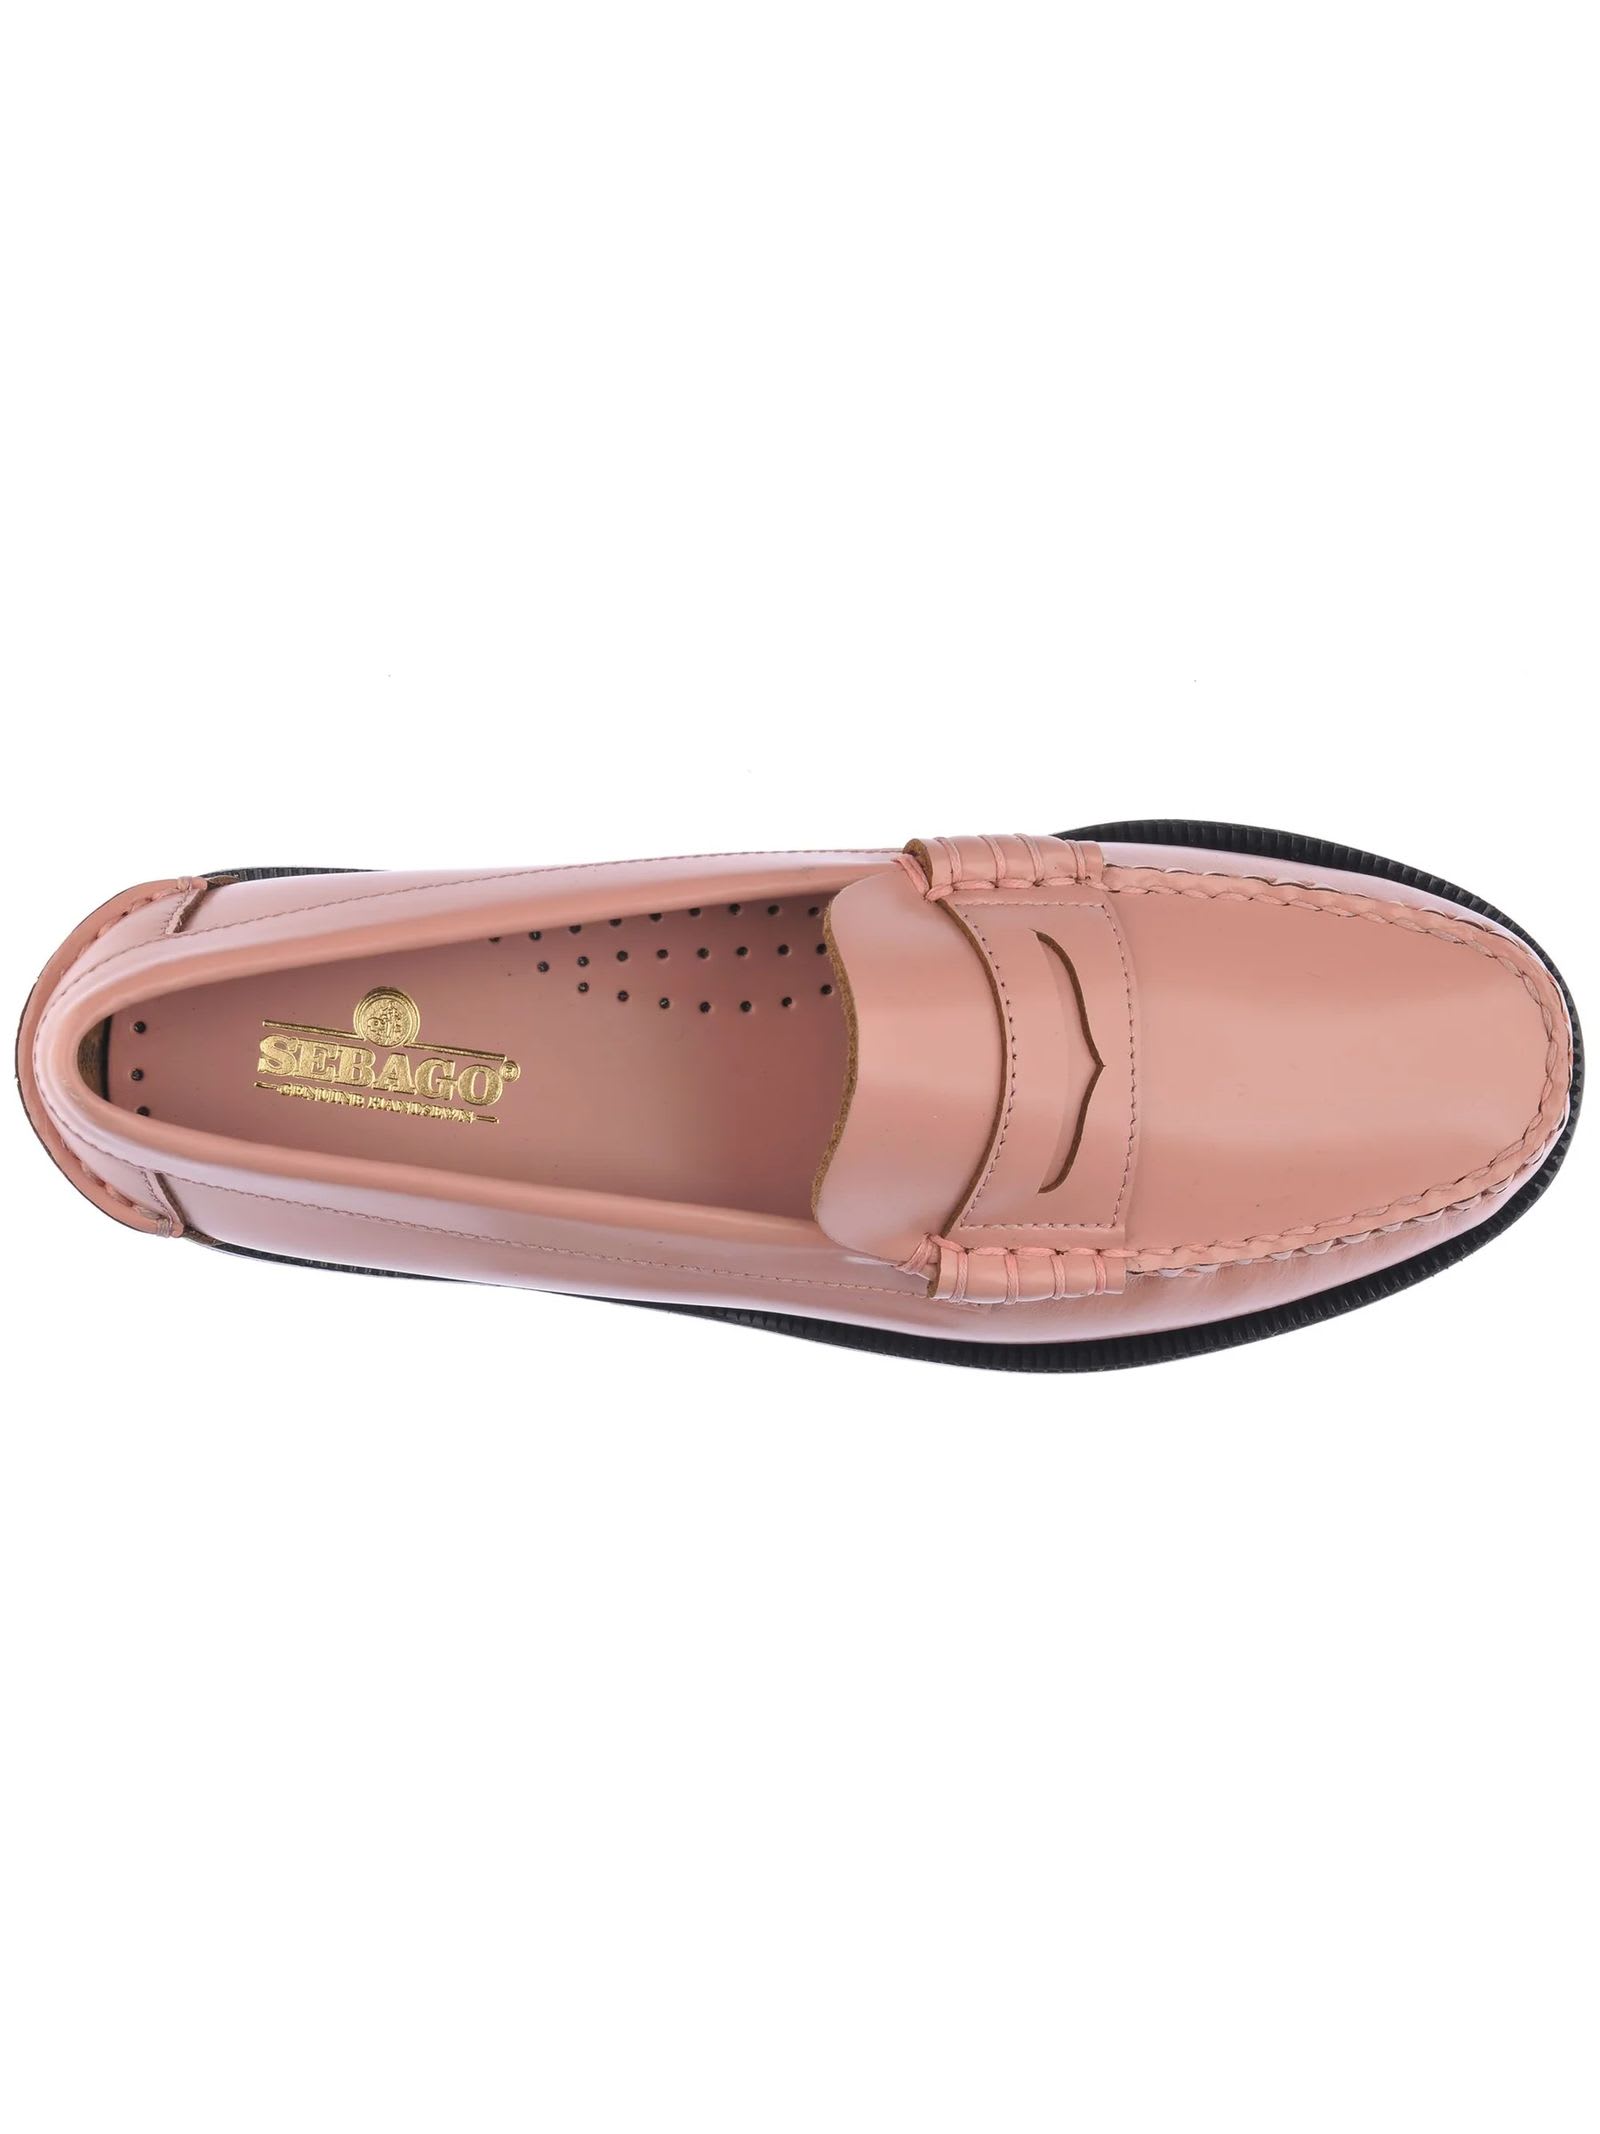 Shop Sebago Pink Smooth Grain Leather Loafer